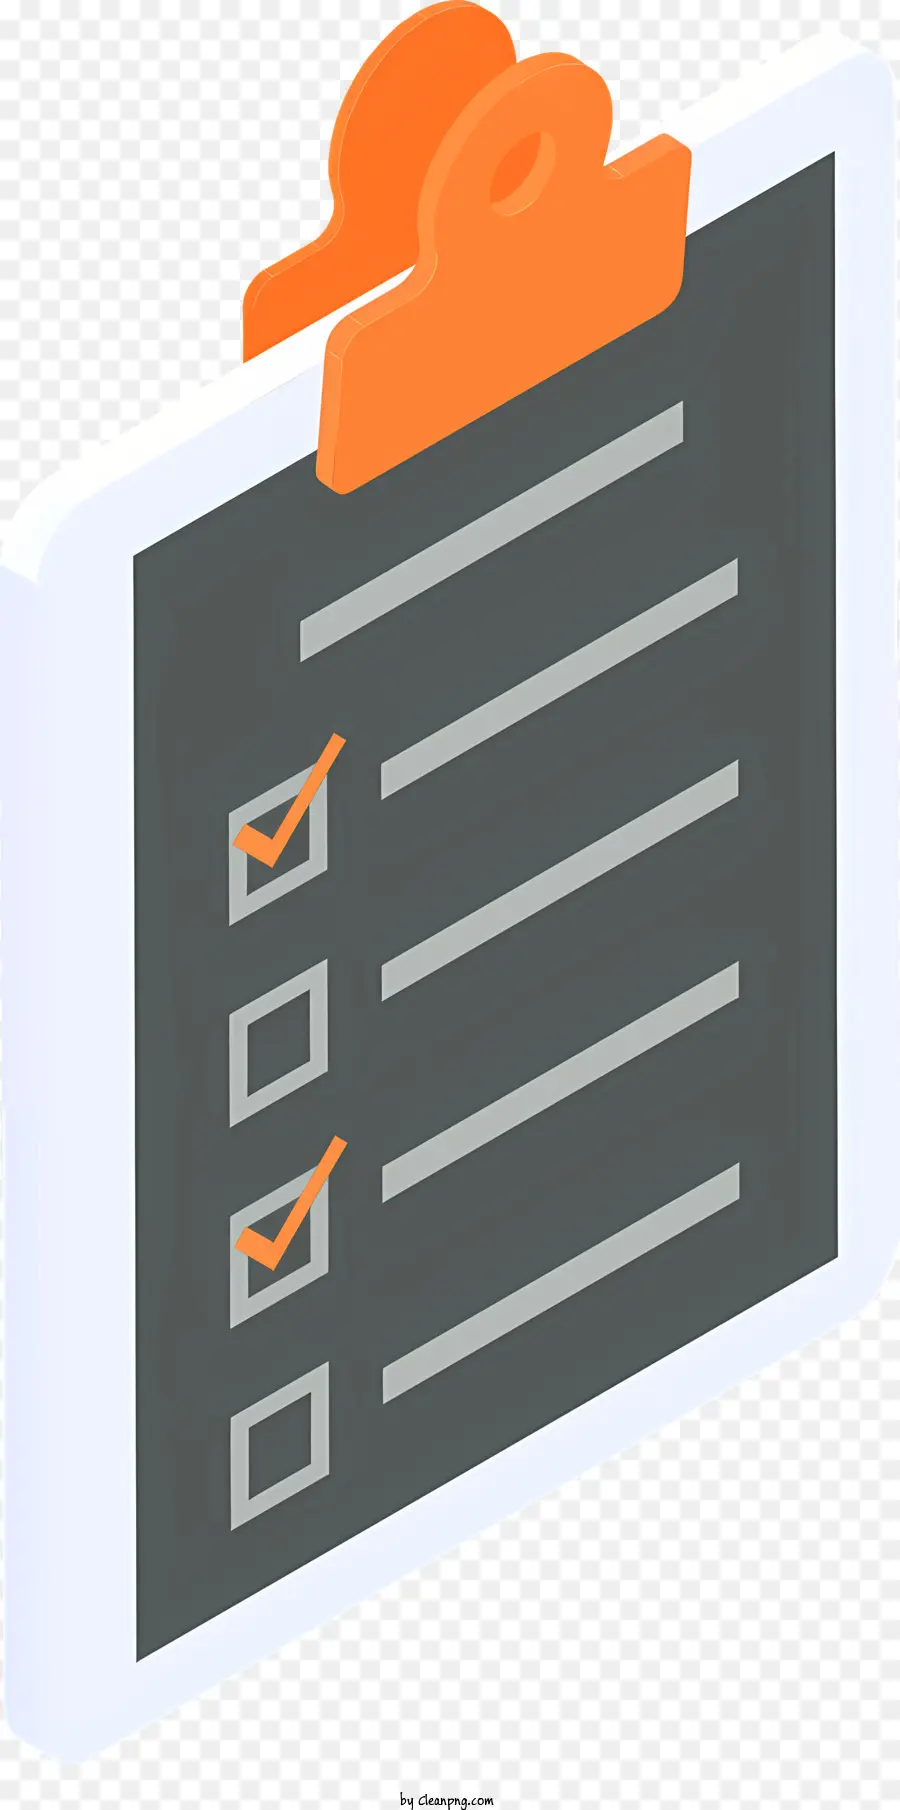 Checkliste - Zwischenablage mit Hefter, Papieren, roter Checkliste; 
detailliert